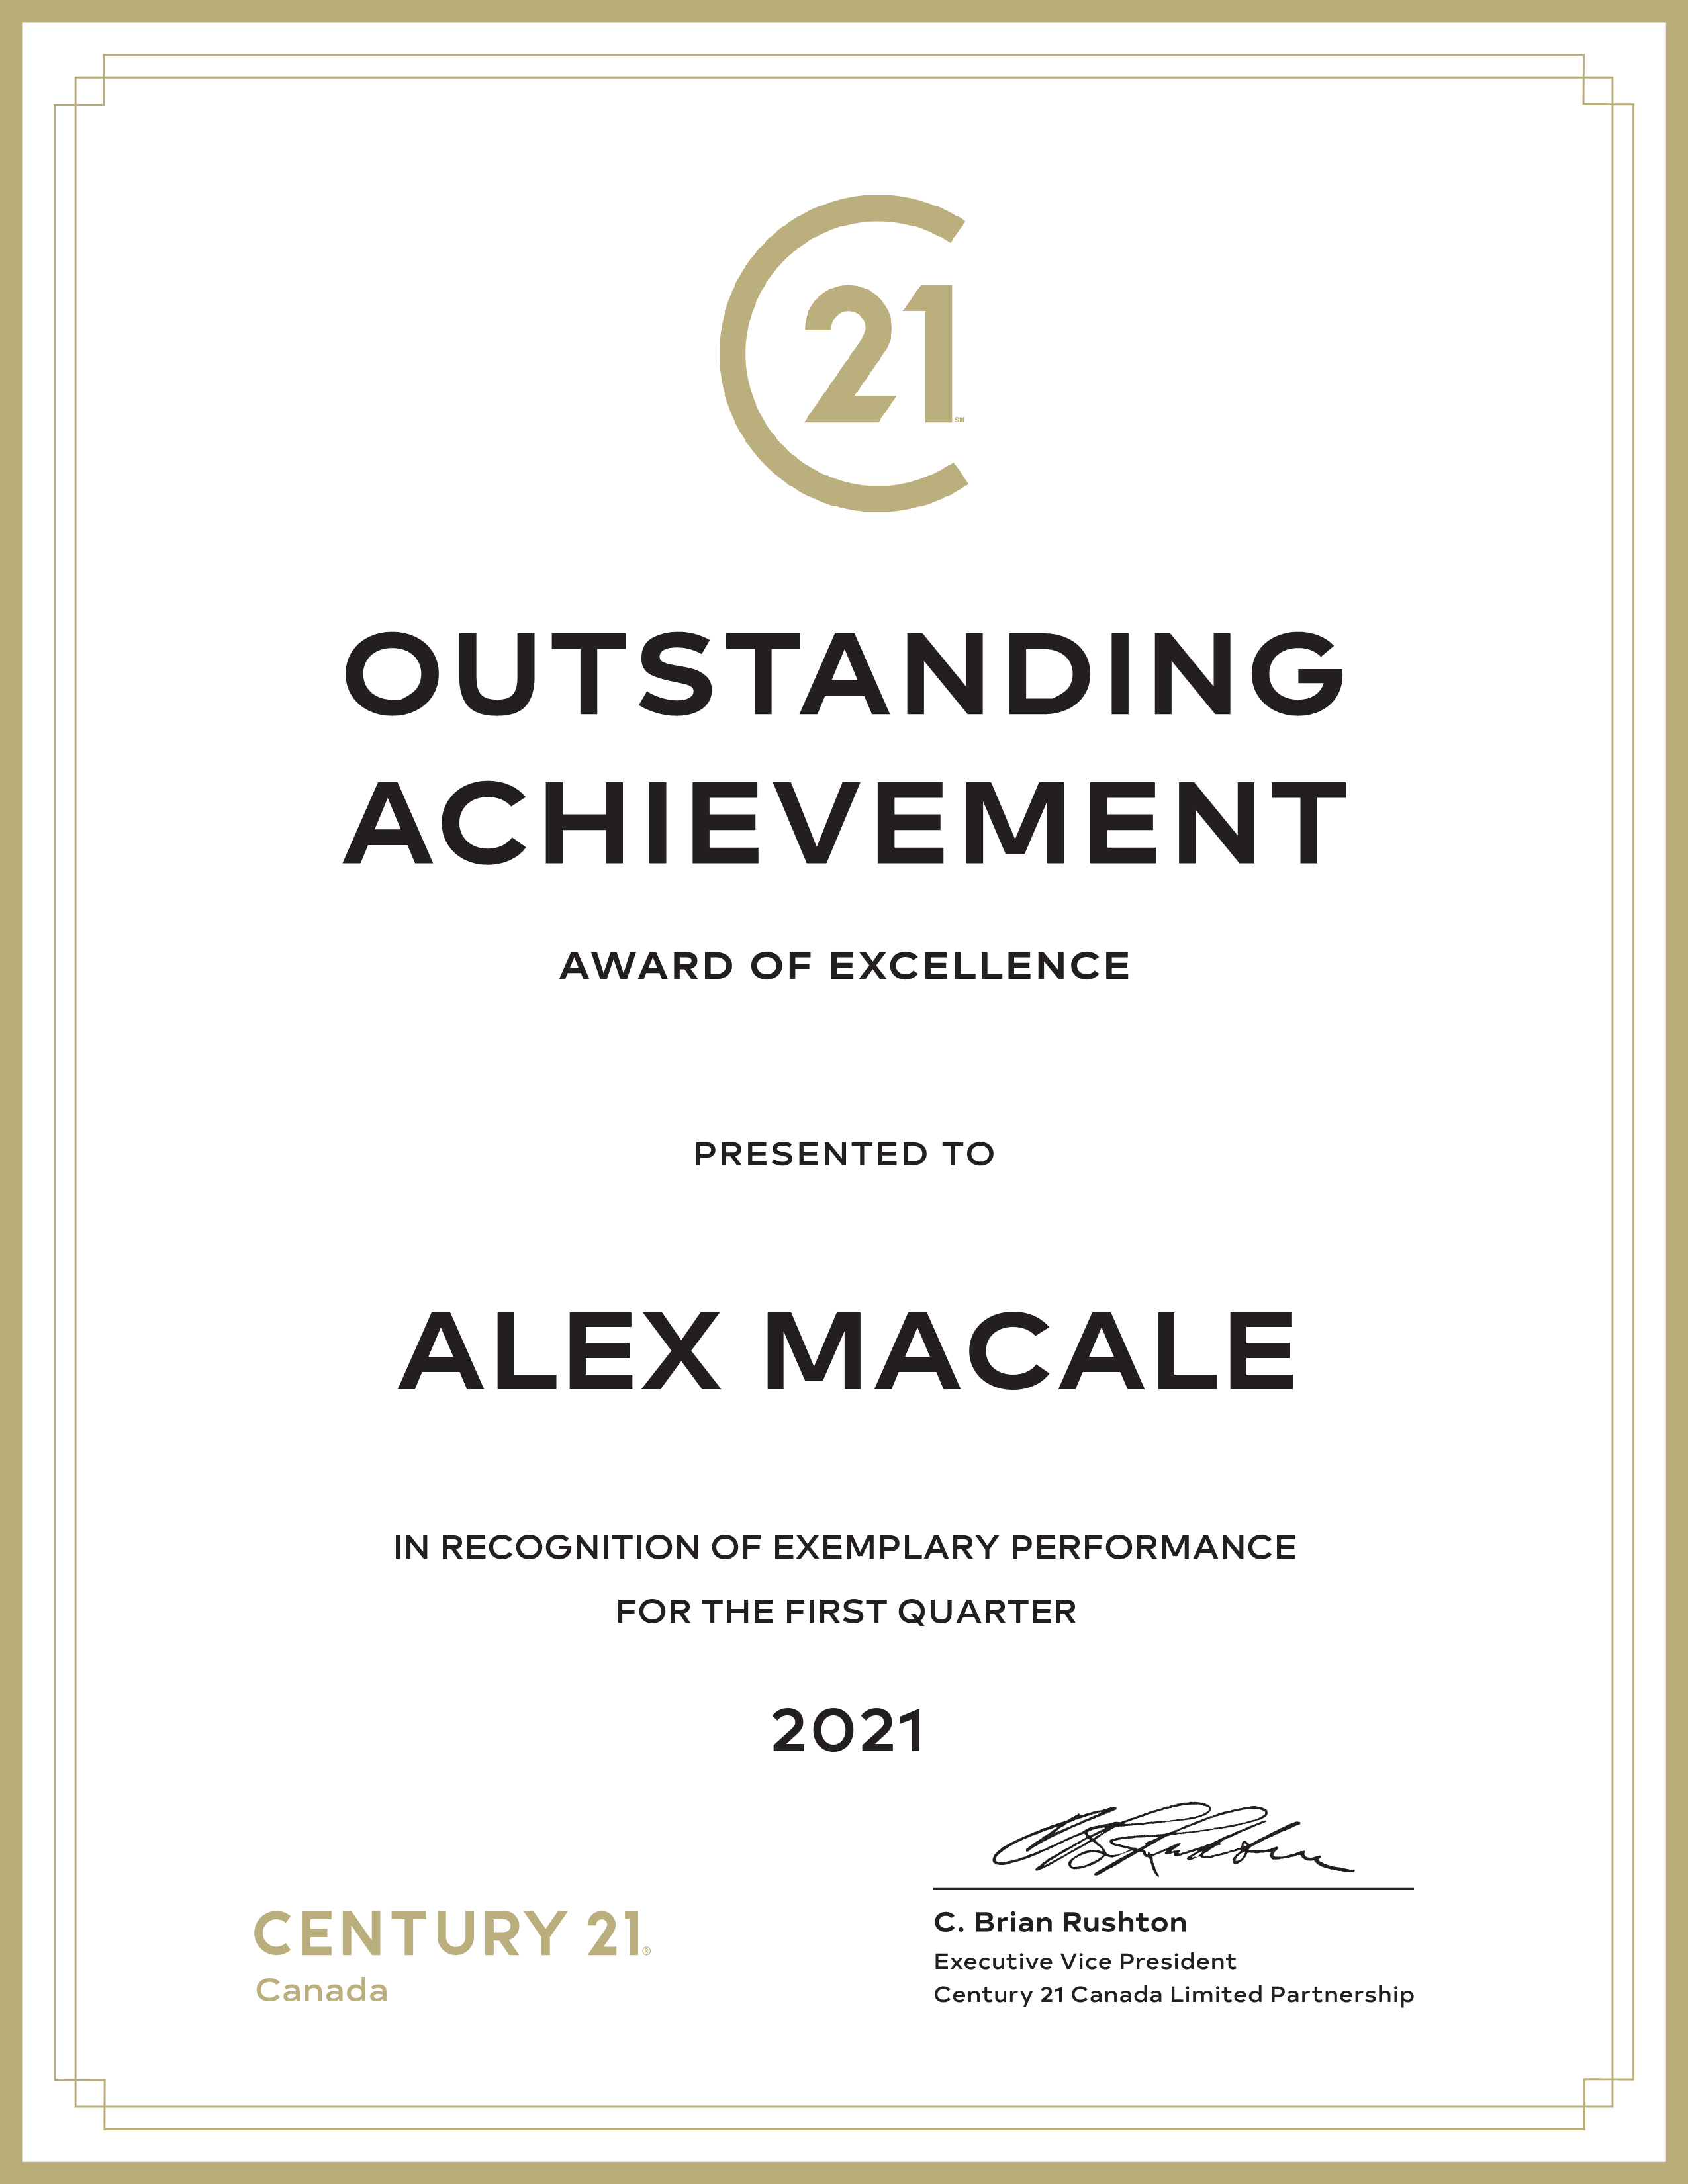 Alex-Macale-en-outstanding